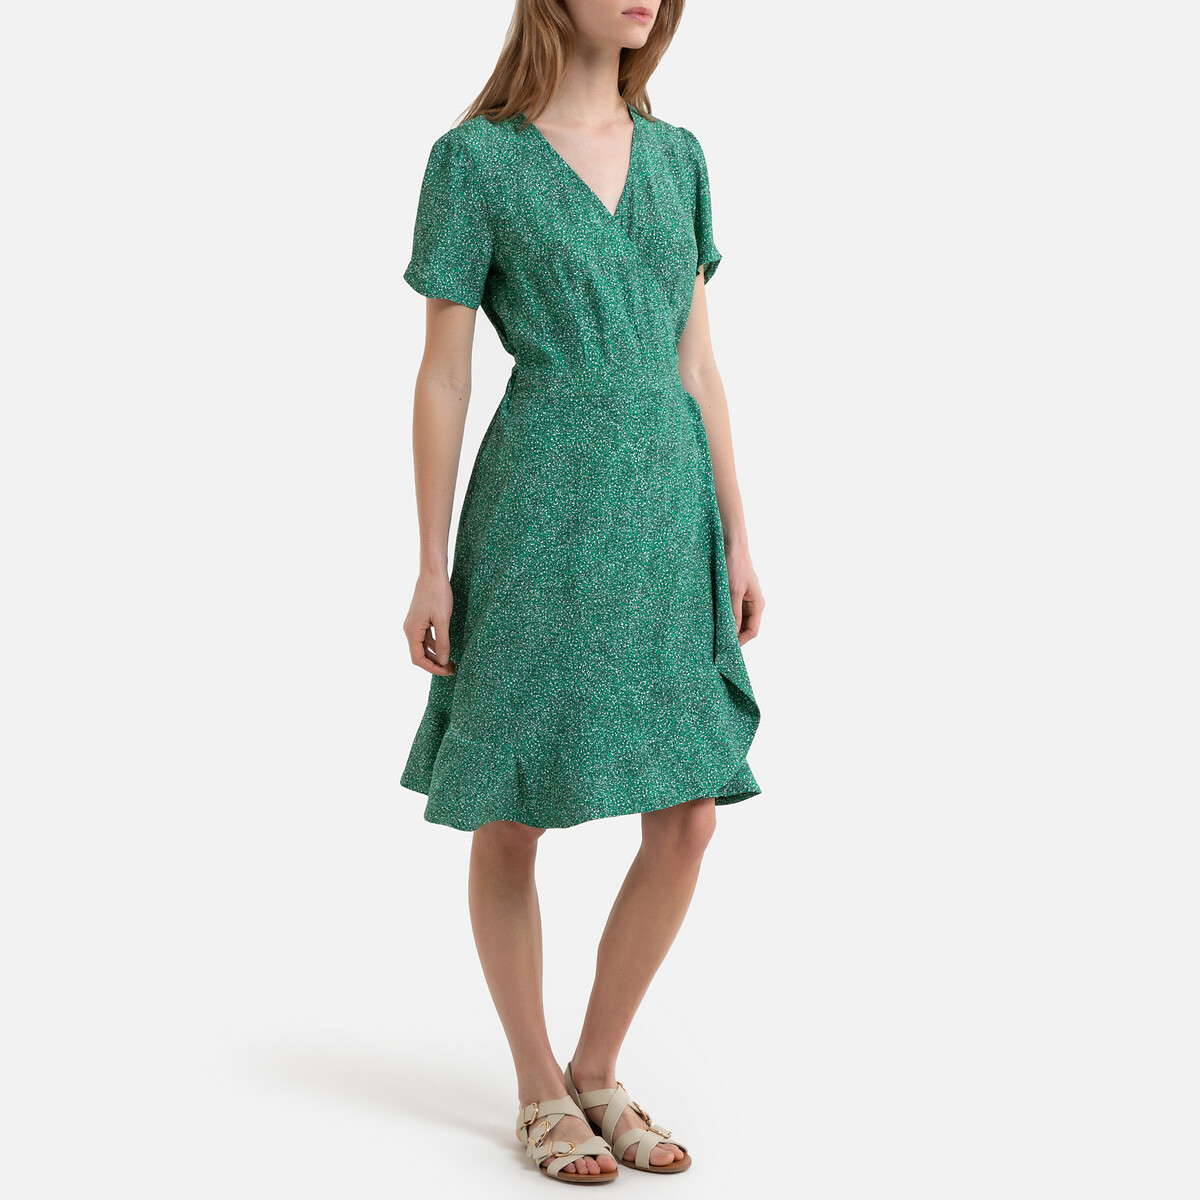 Платье La Redoute С запахом с короткими рукавами PERRINE 36 (FR) - 42 (RUS) зеленый, размер 36 (FR) - 42 (RUS) С запахом с короткими рукавами PERRINE 36 (FR) - 42 (RUS) зеленый - фото 2